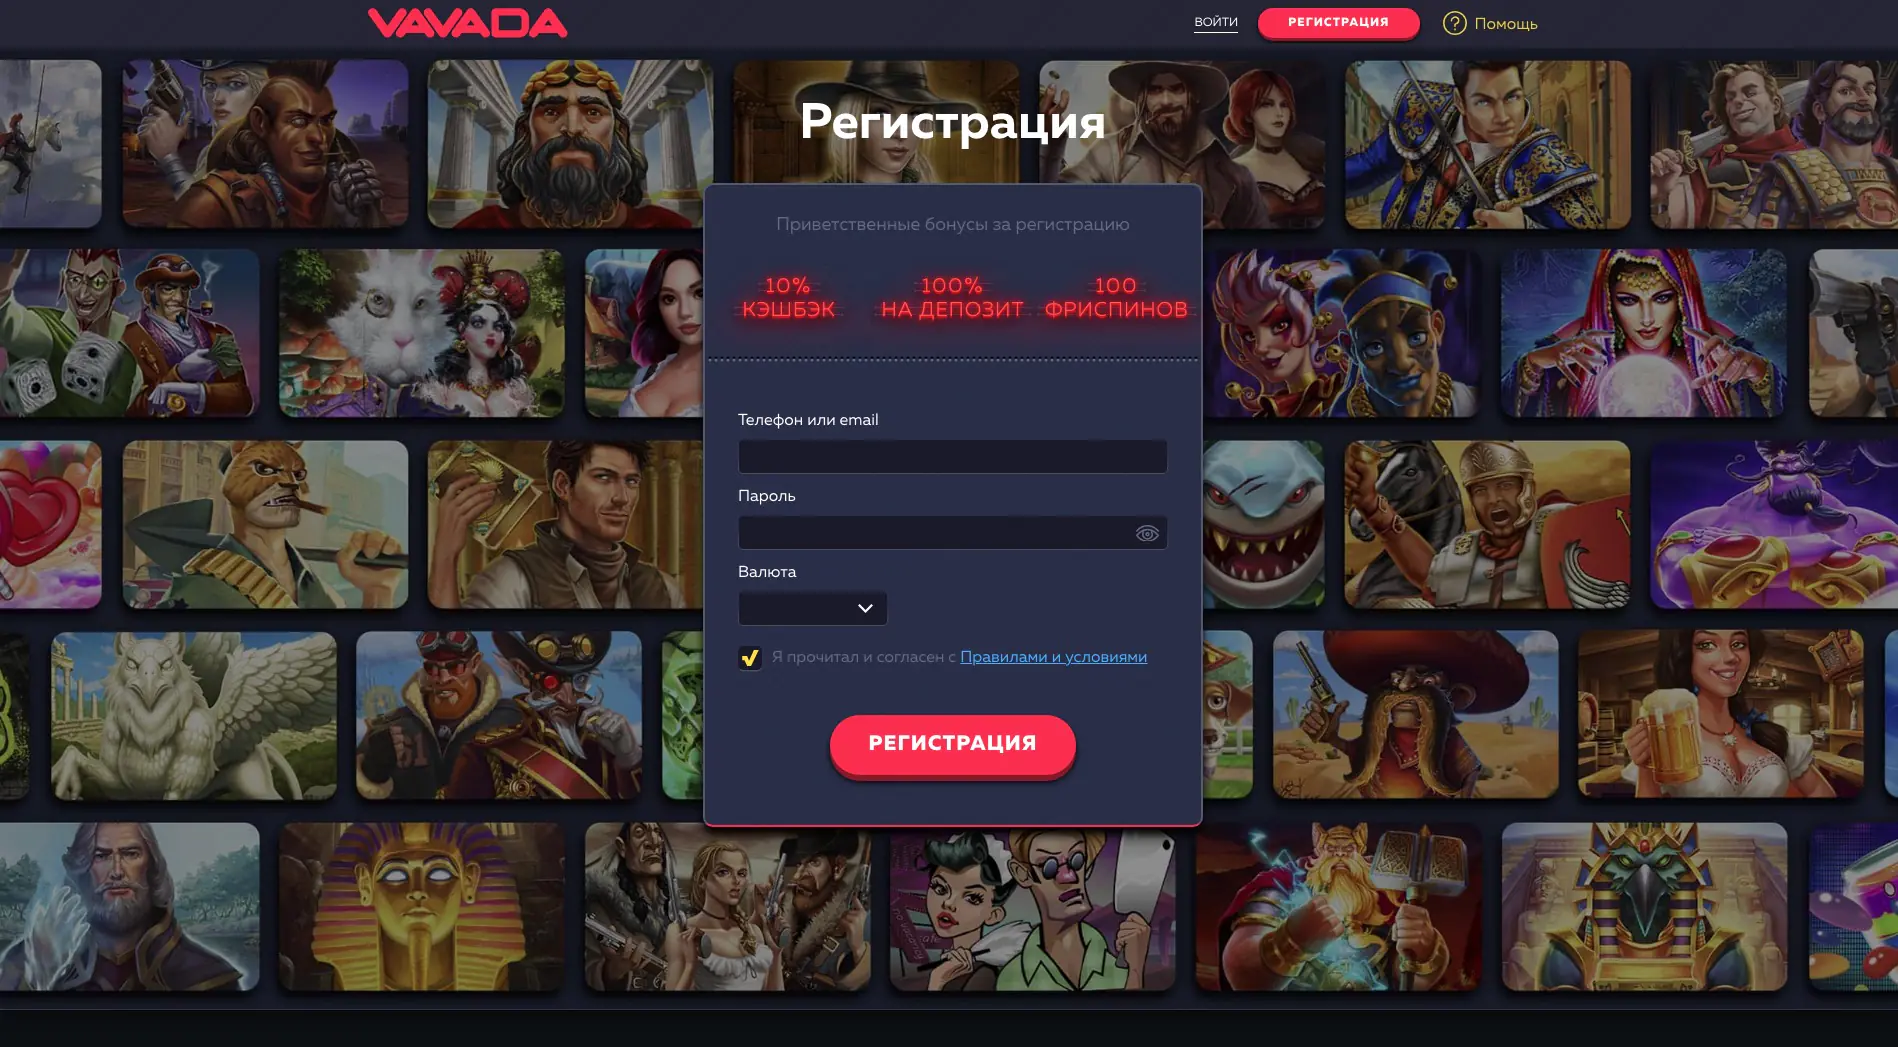 Вавада Казино: Официальный Сайт, Реальные Отзывы Игроков, Промокоды и Бонусы